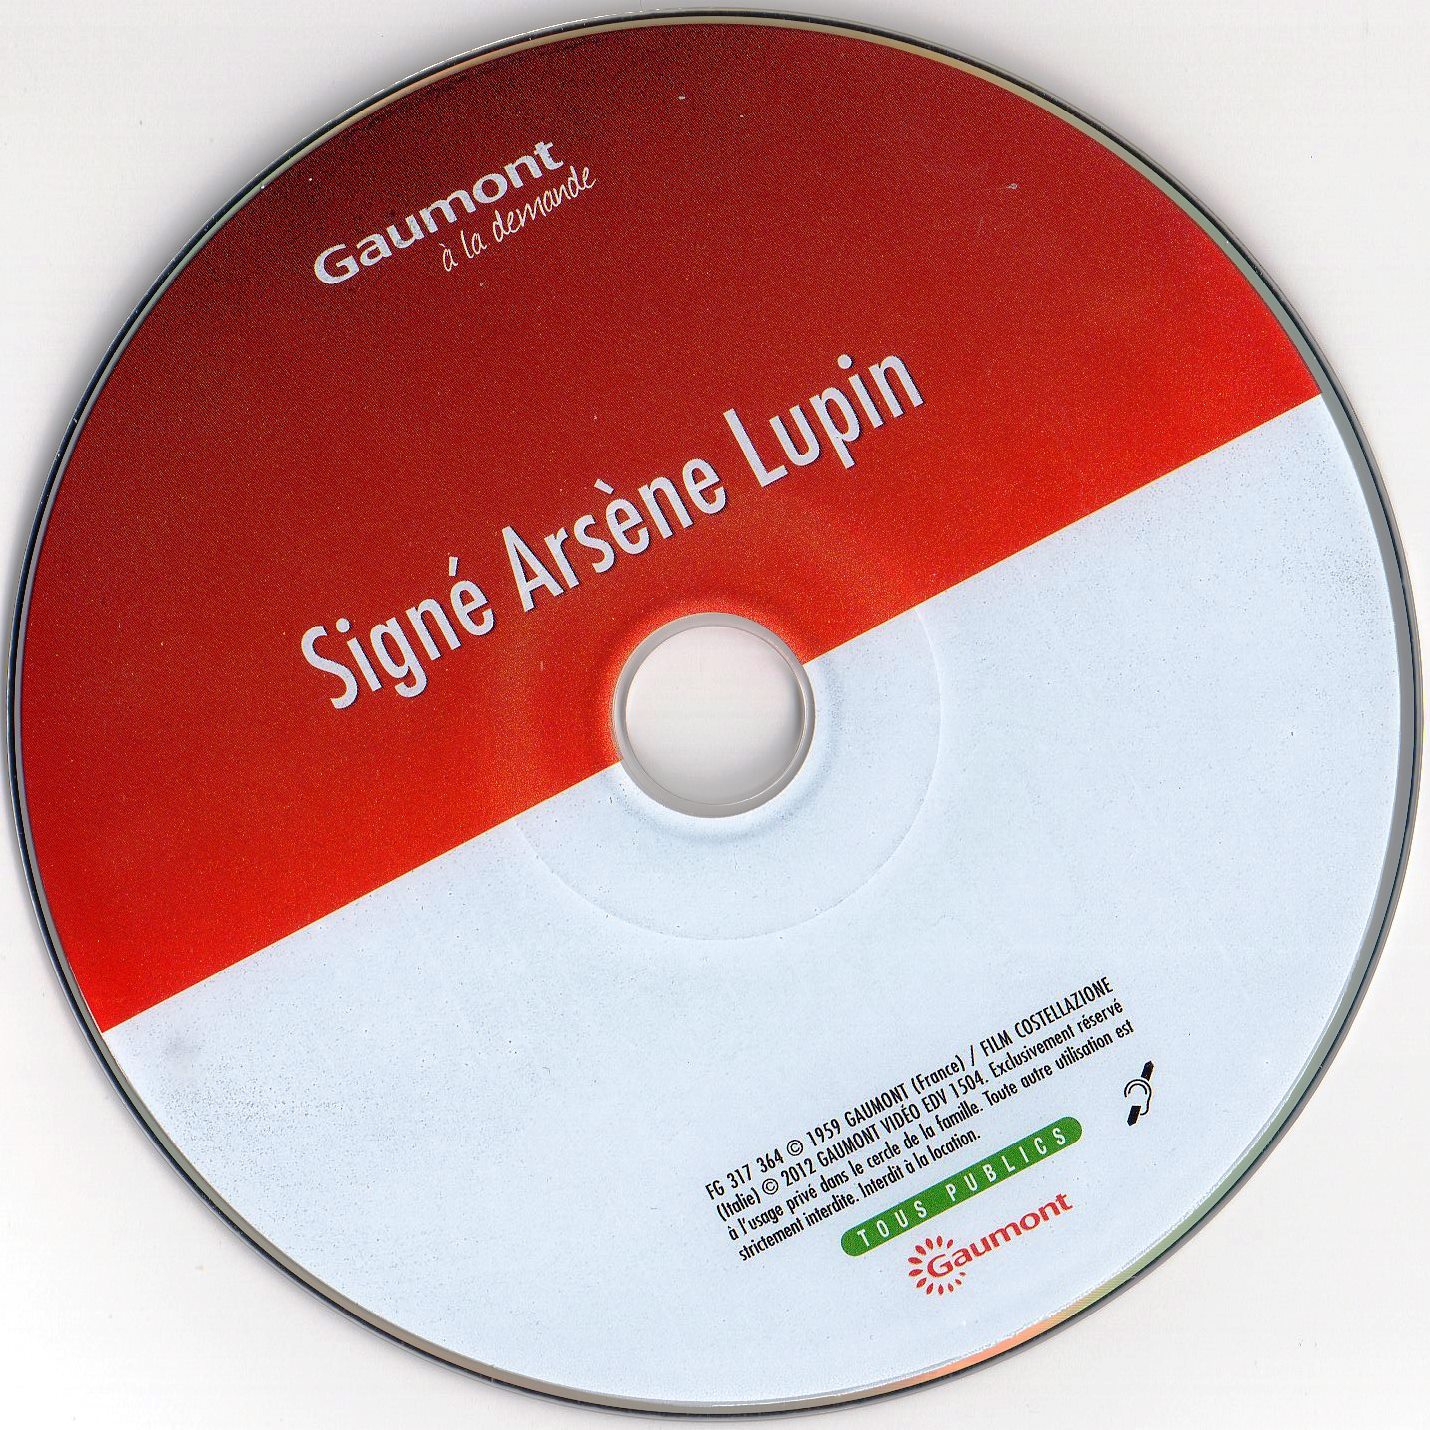 Sign Arsne Lupin v2